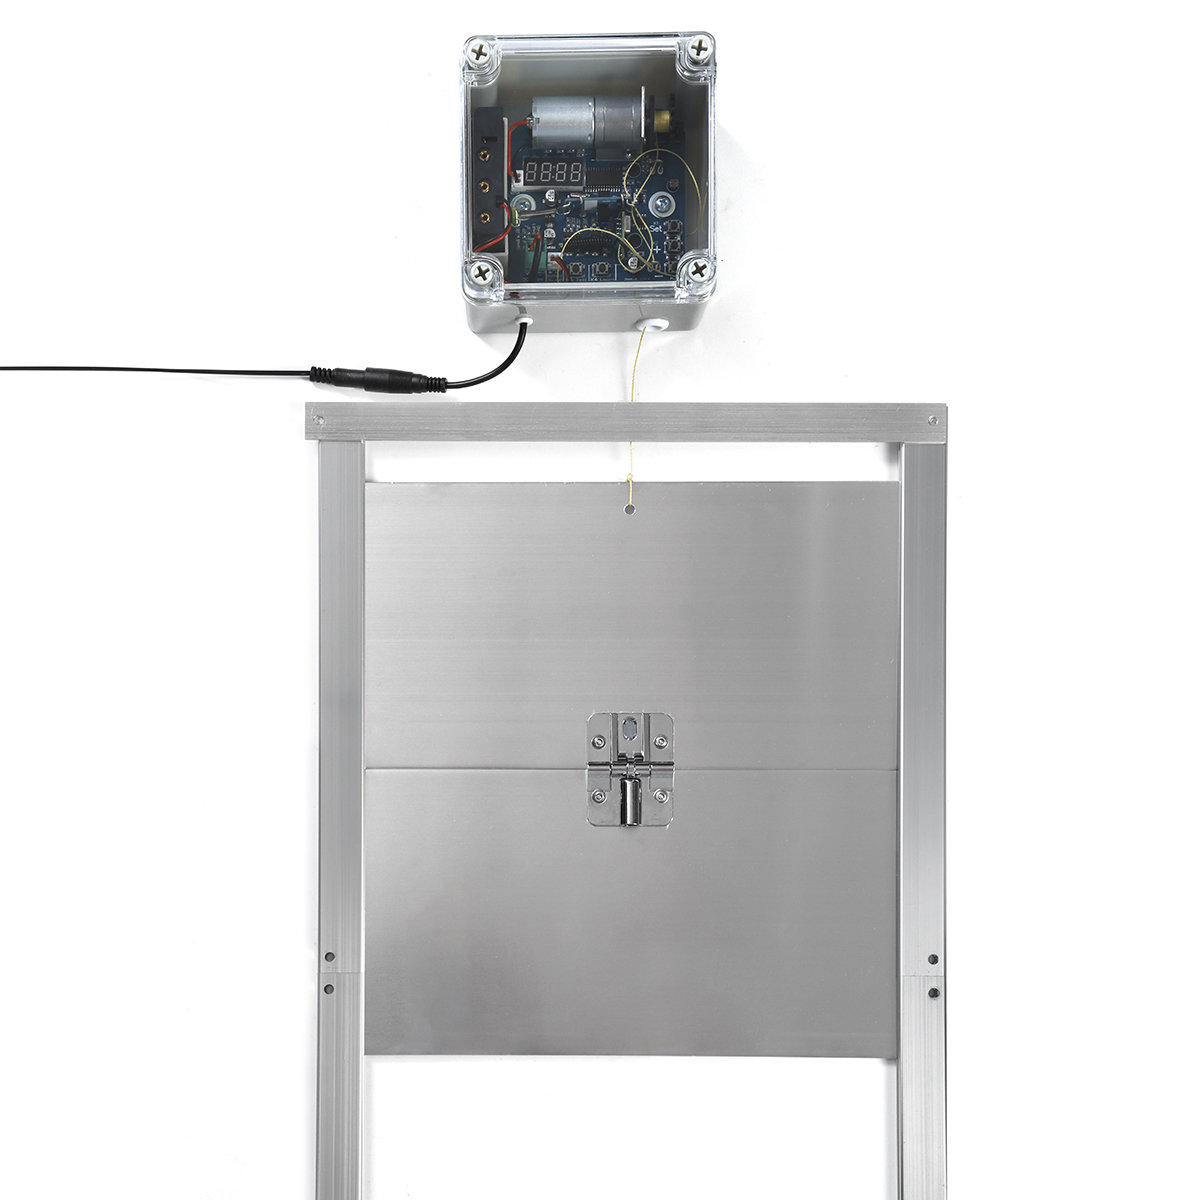 Apriporta Automatico Kit Porta Automatica per Pollaio Galline Oche 30x30cm  100-240V IP44 HW0120